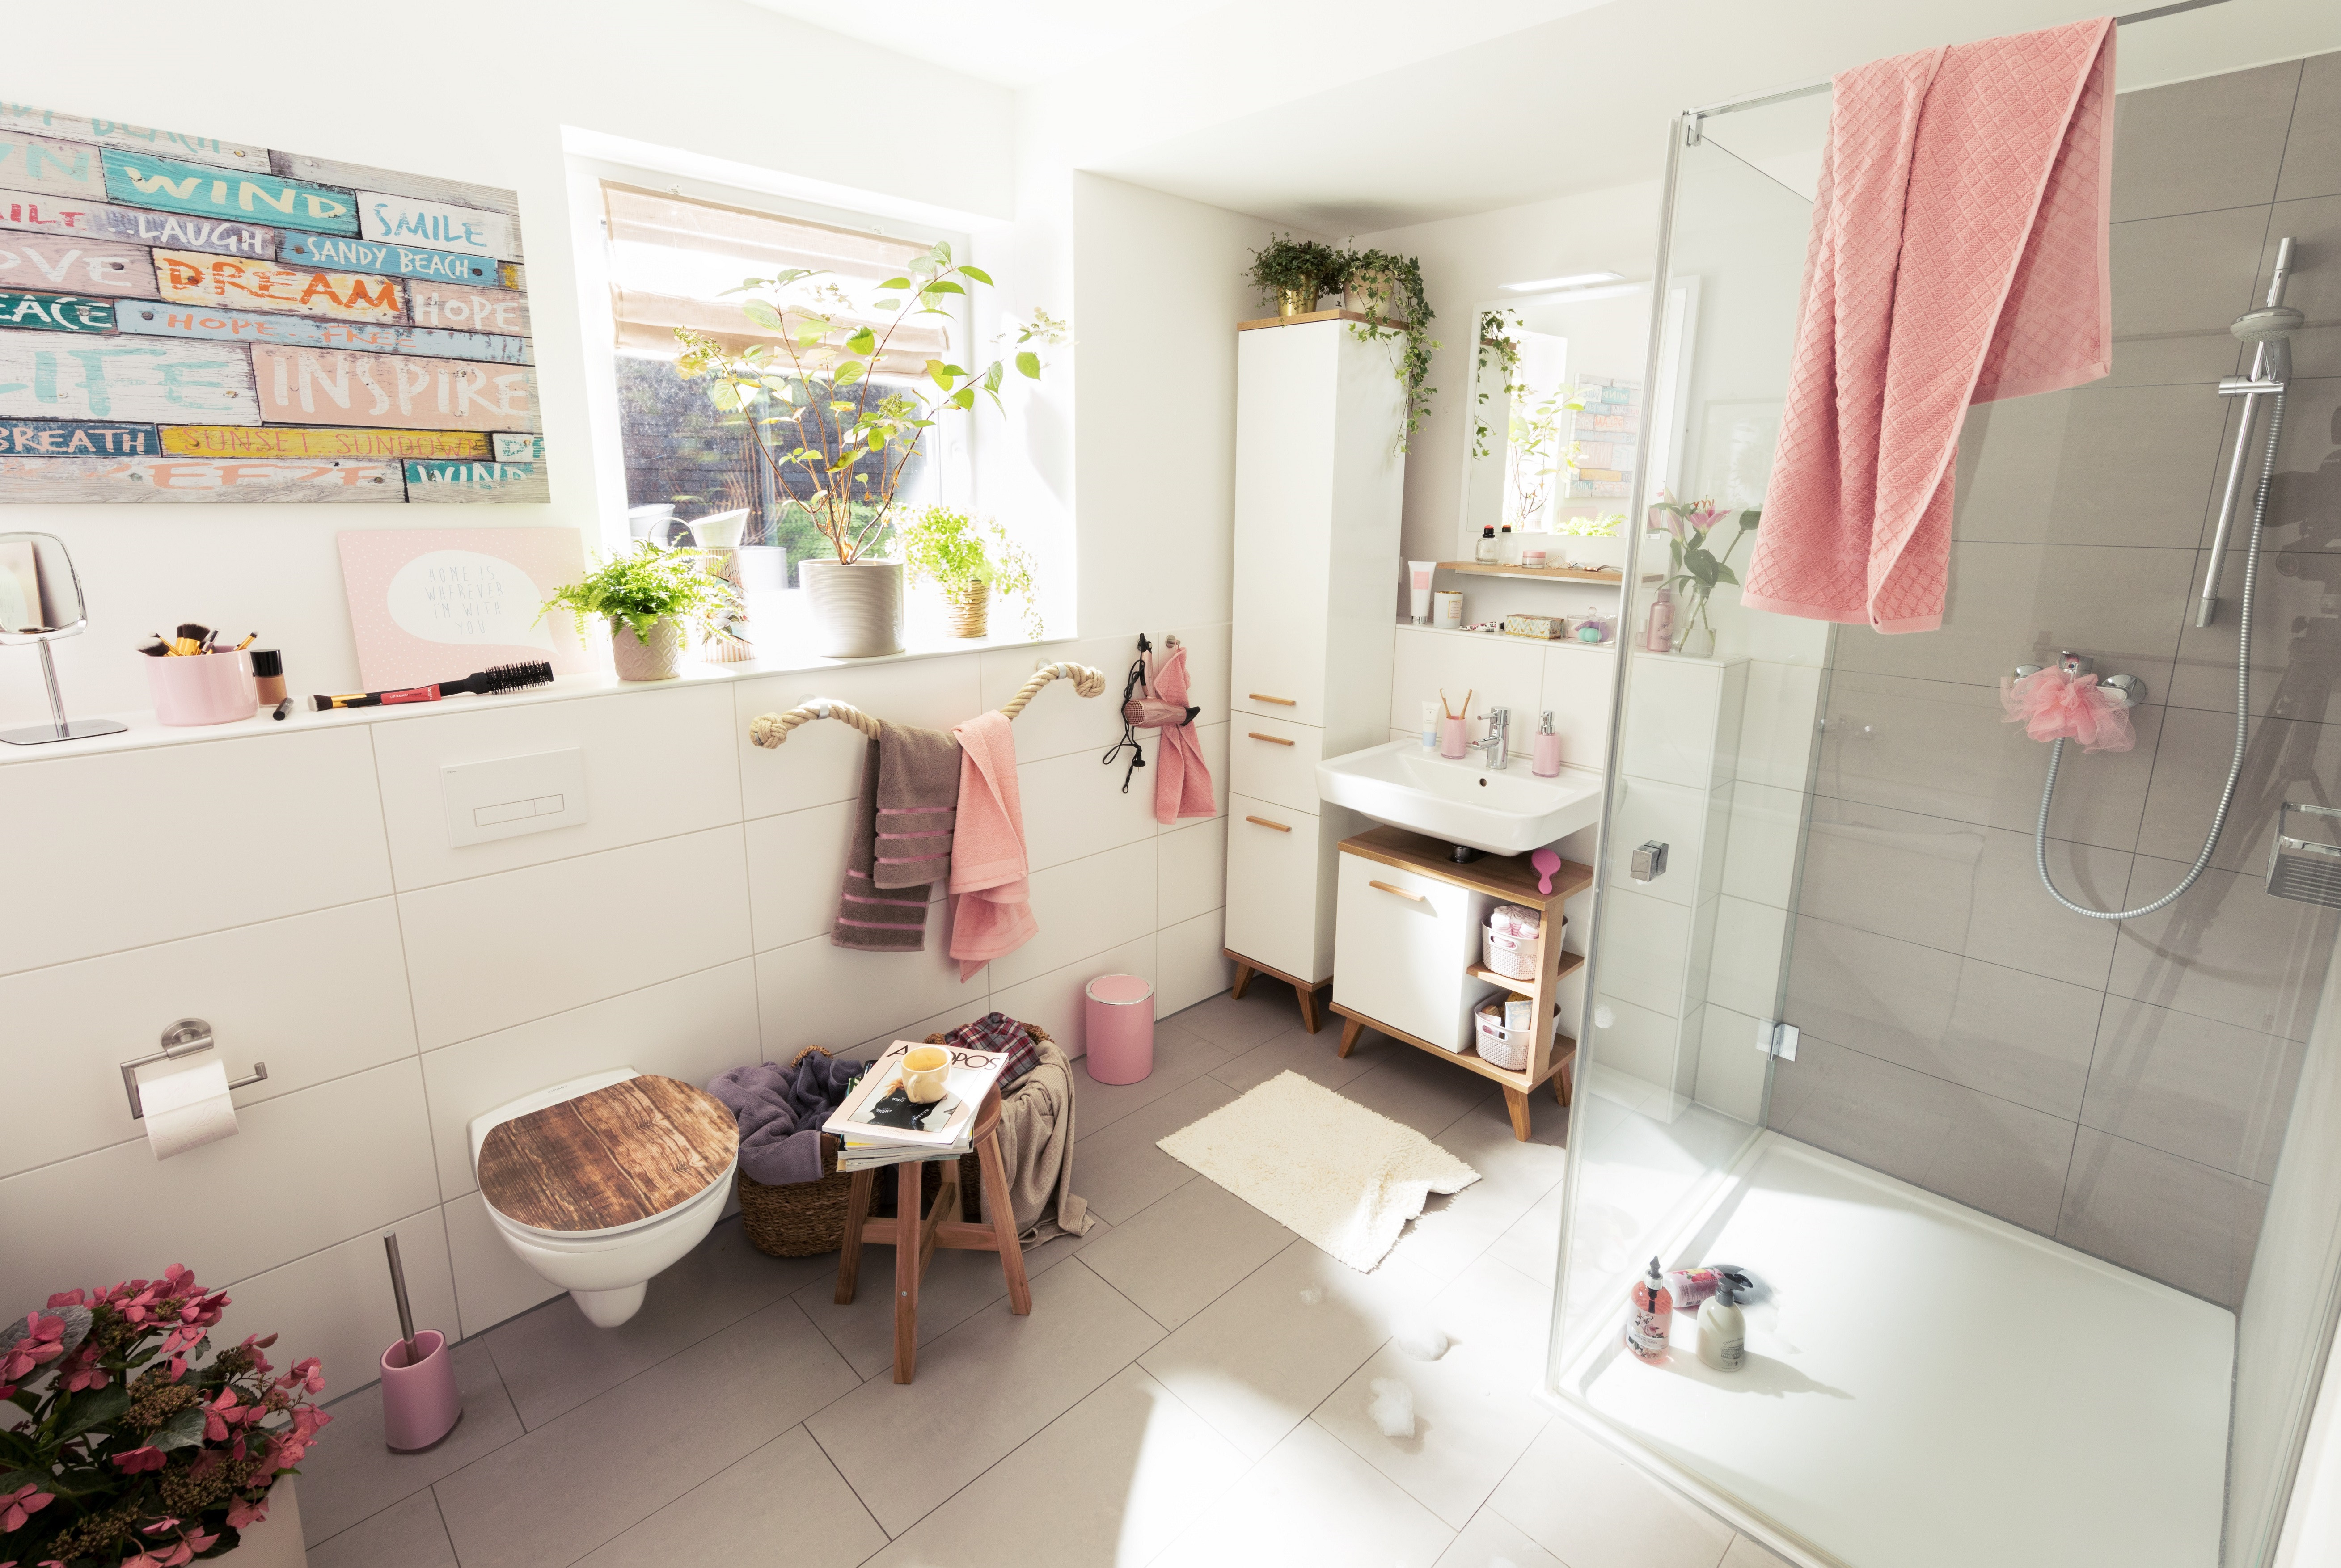 Badezimmer Dekorieren
 Badezimmer dekorieren – Wohlfühl Atmosphäre im Bad